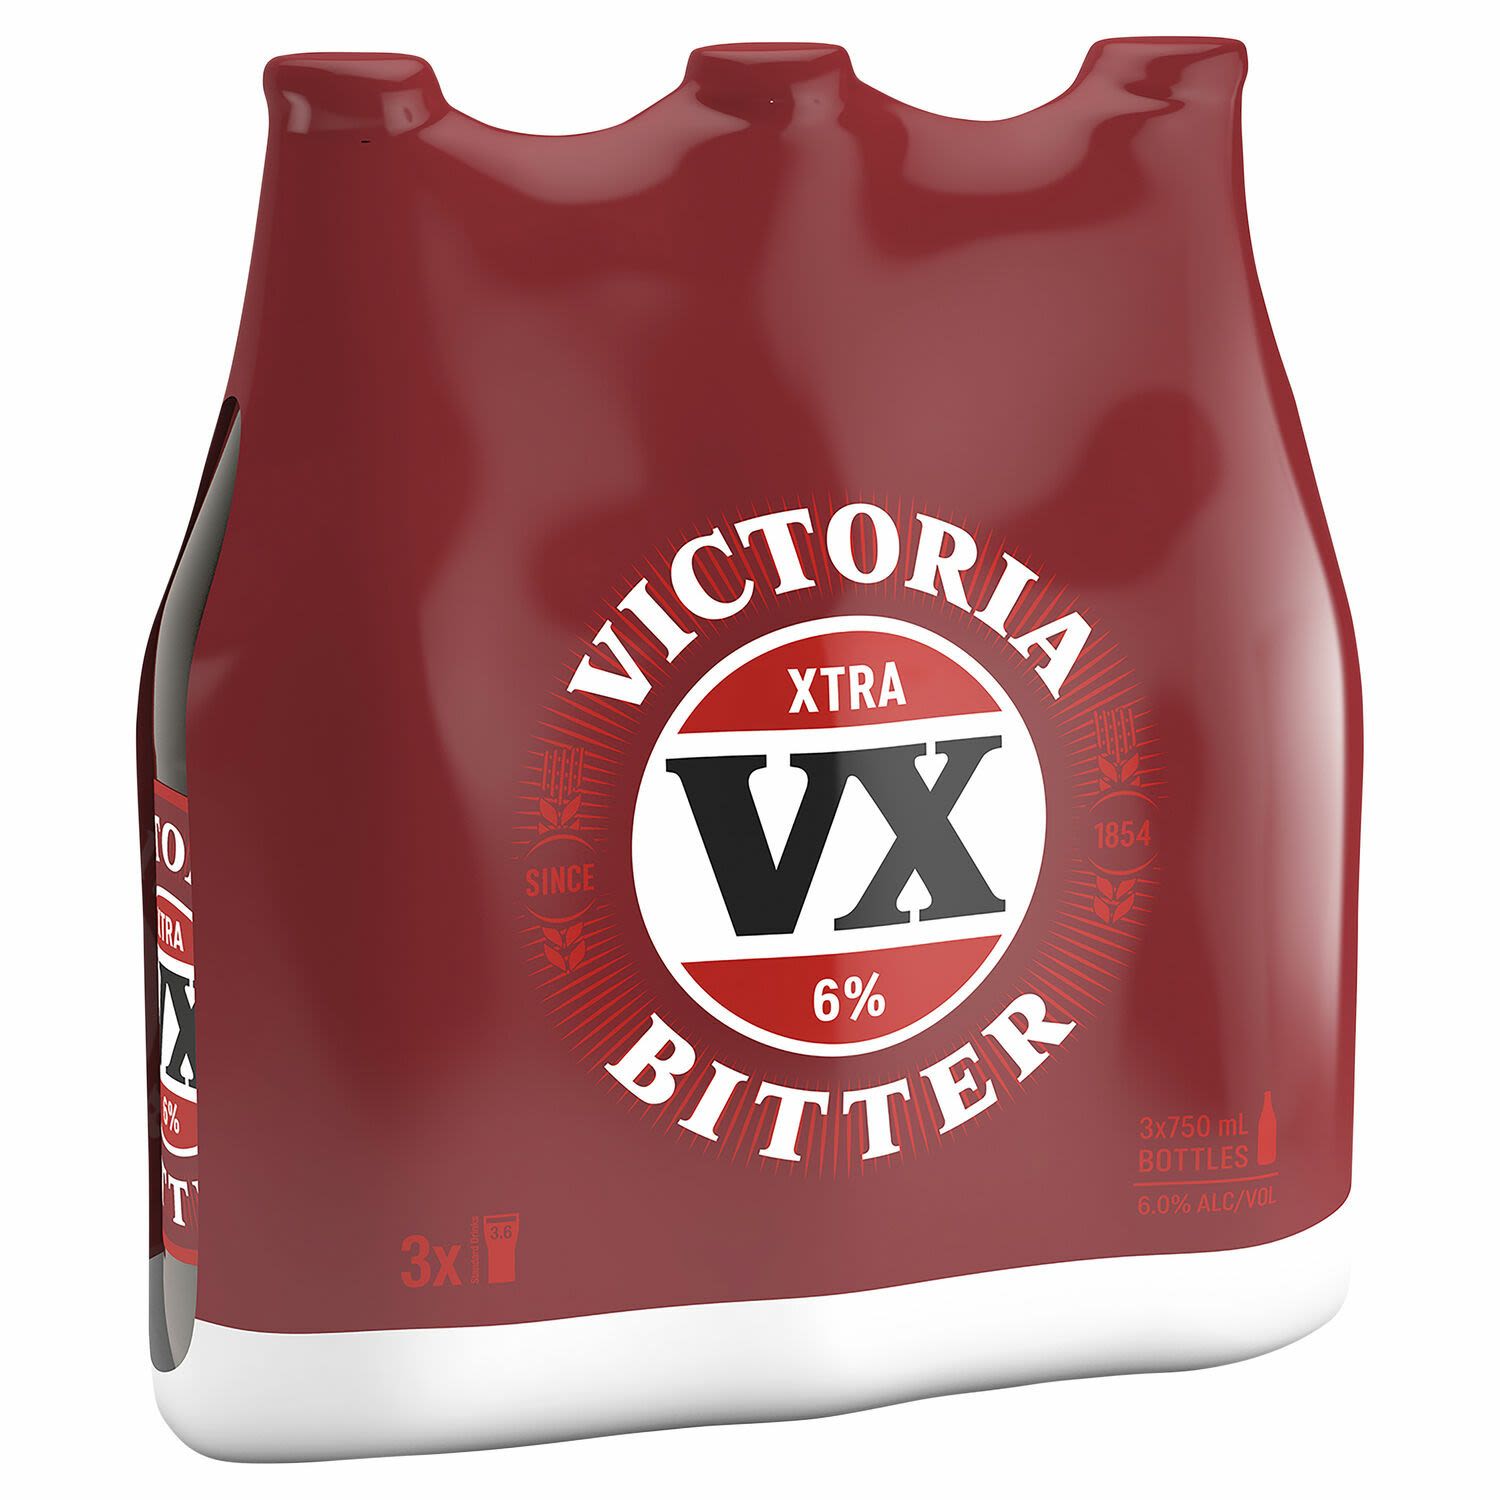 VB XTRA Bottle 750mL 3 Pack